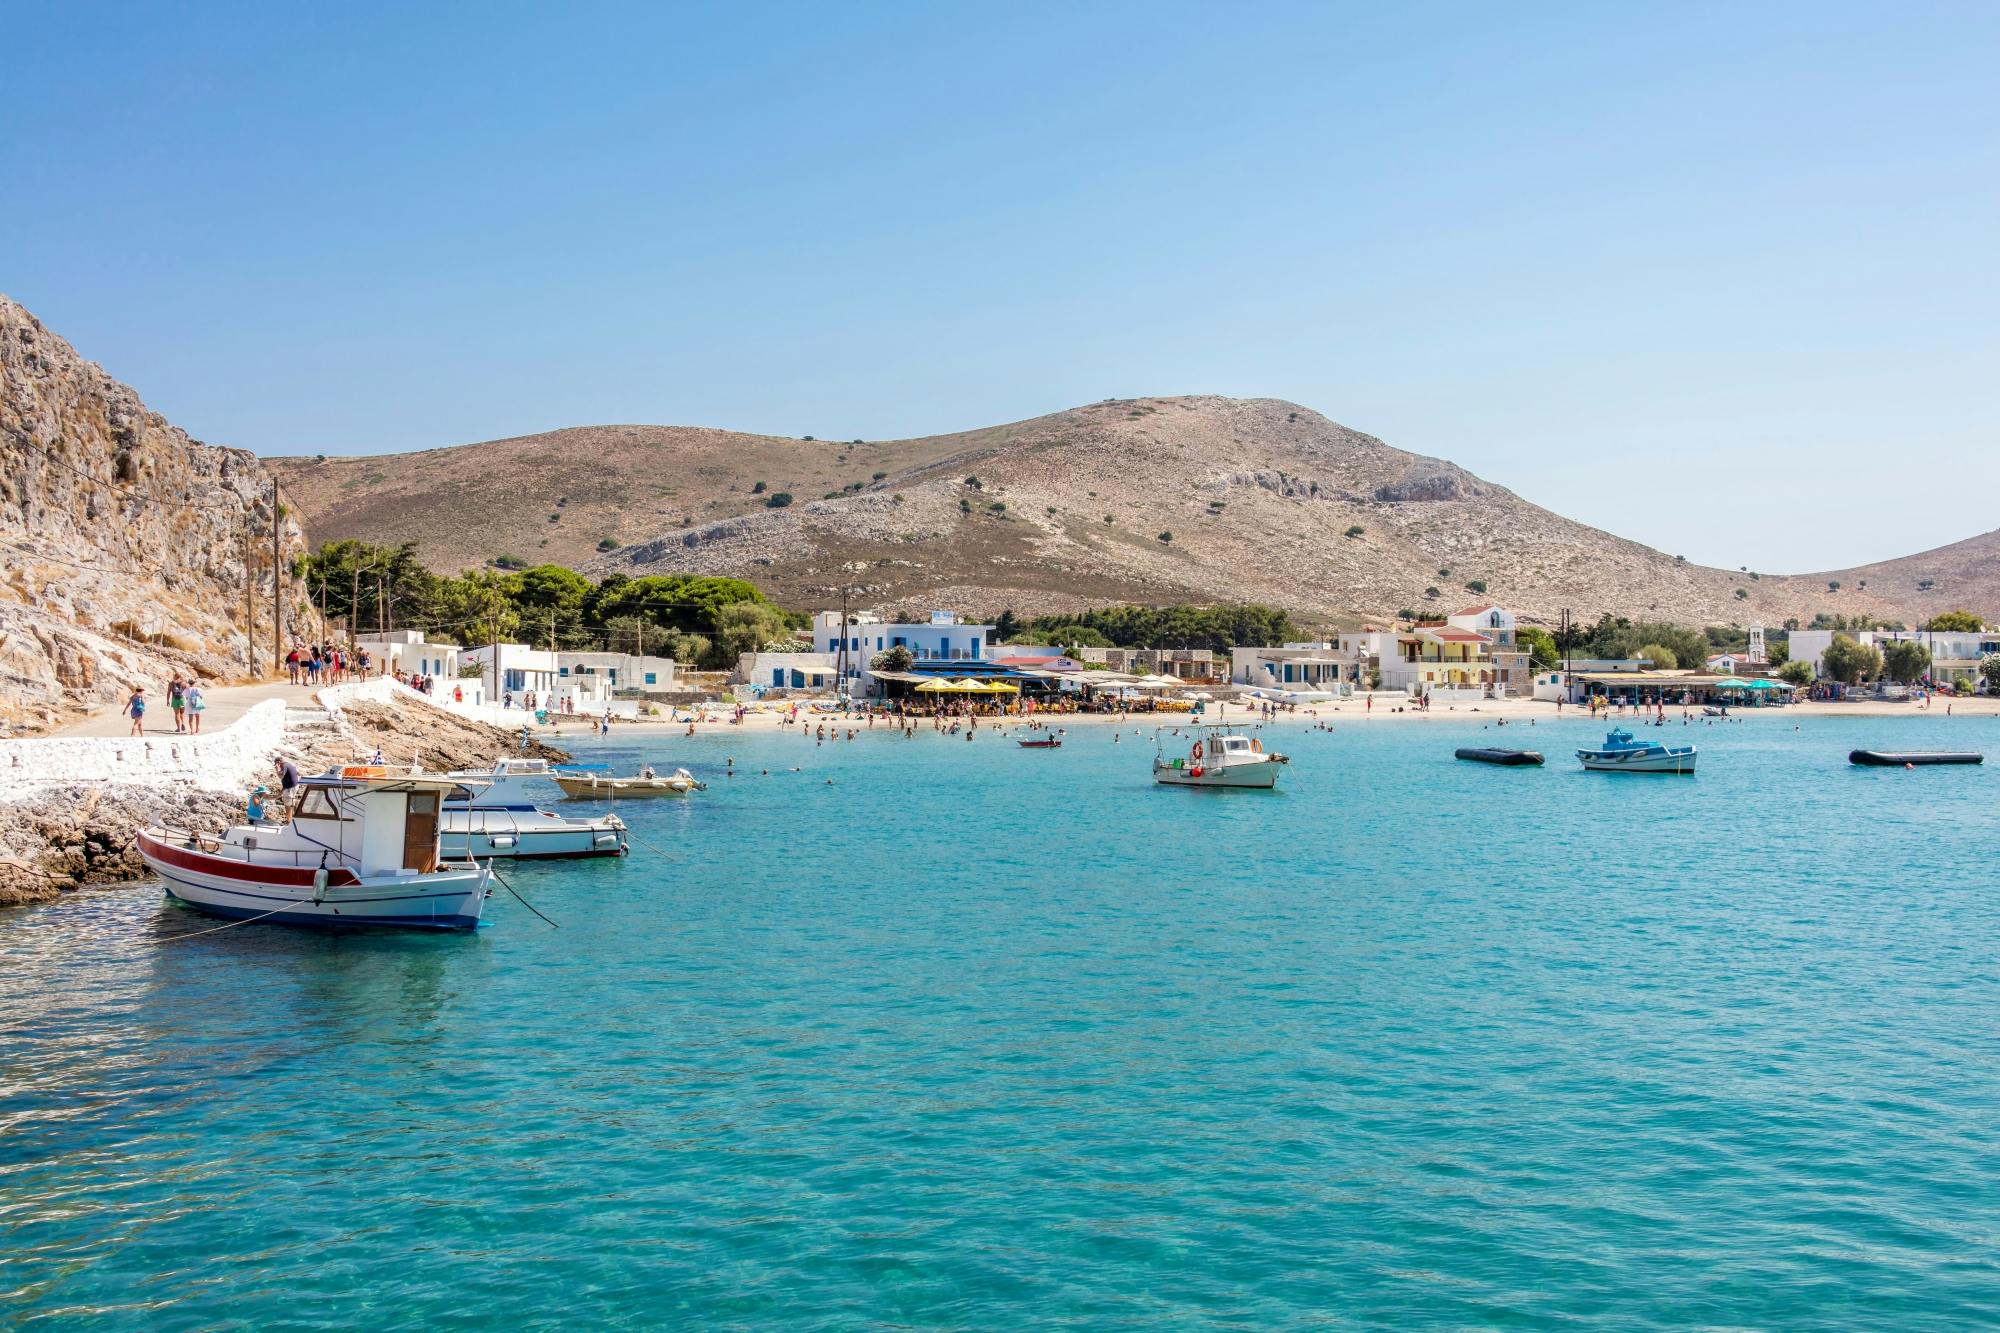 Ägäis-Bootsfahrt mit Mittagessen auf der Insel Kalymnos